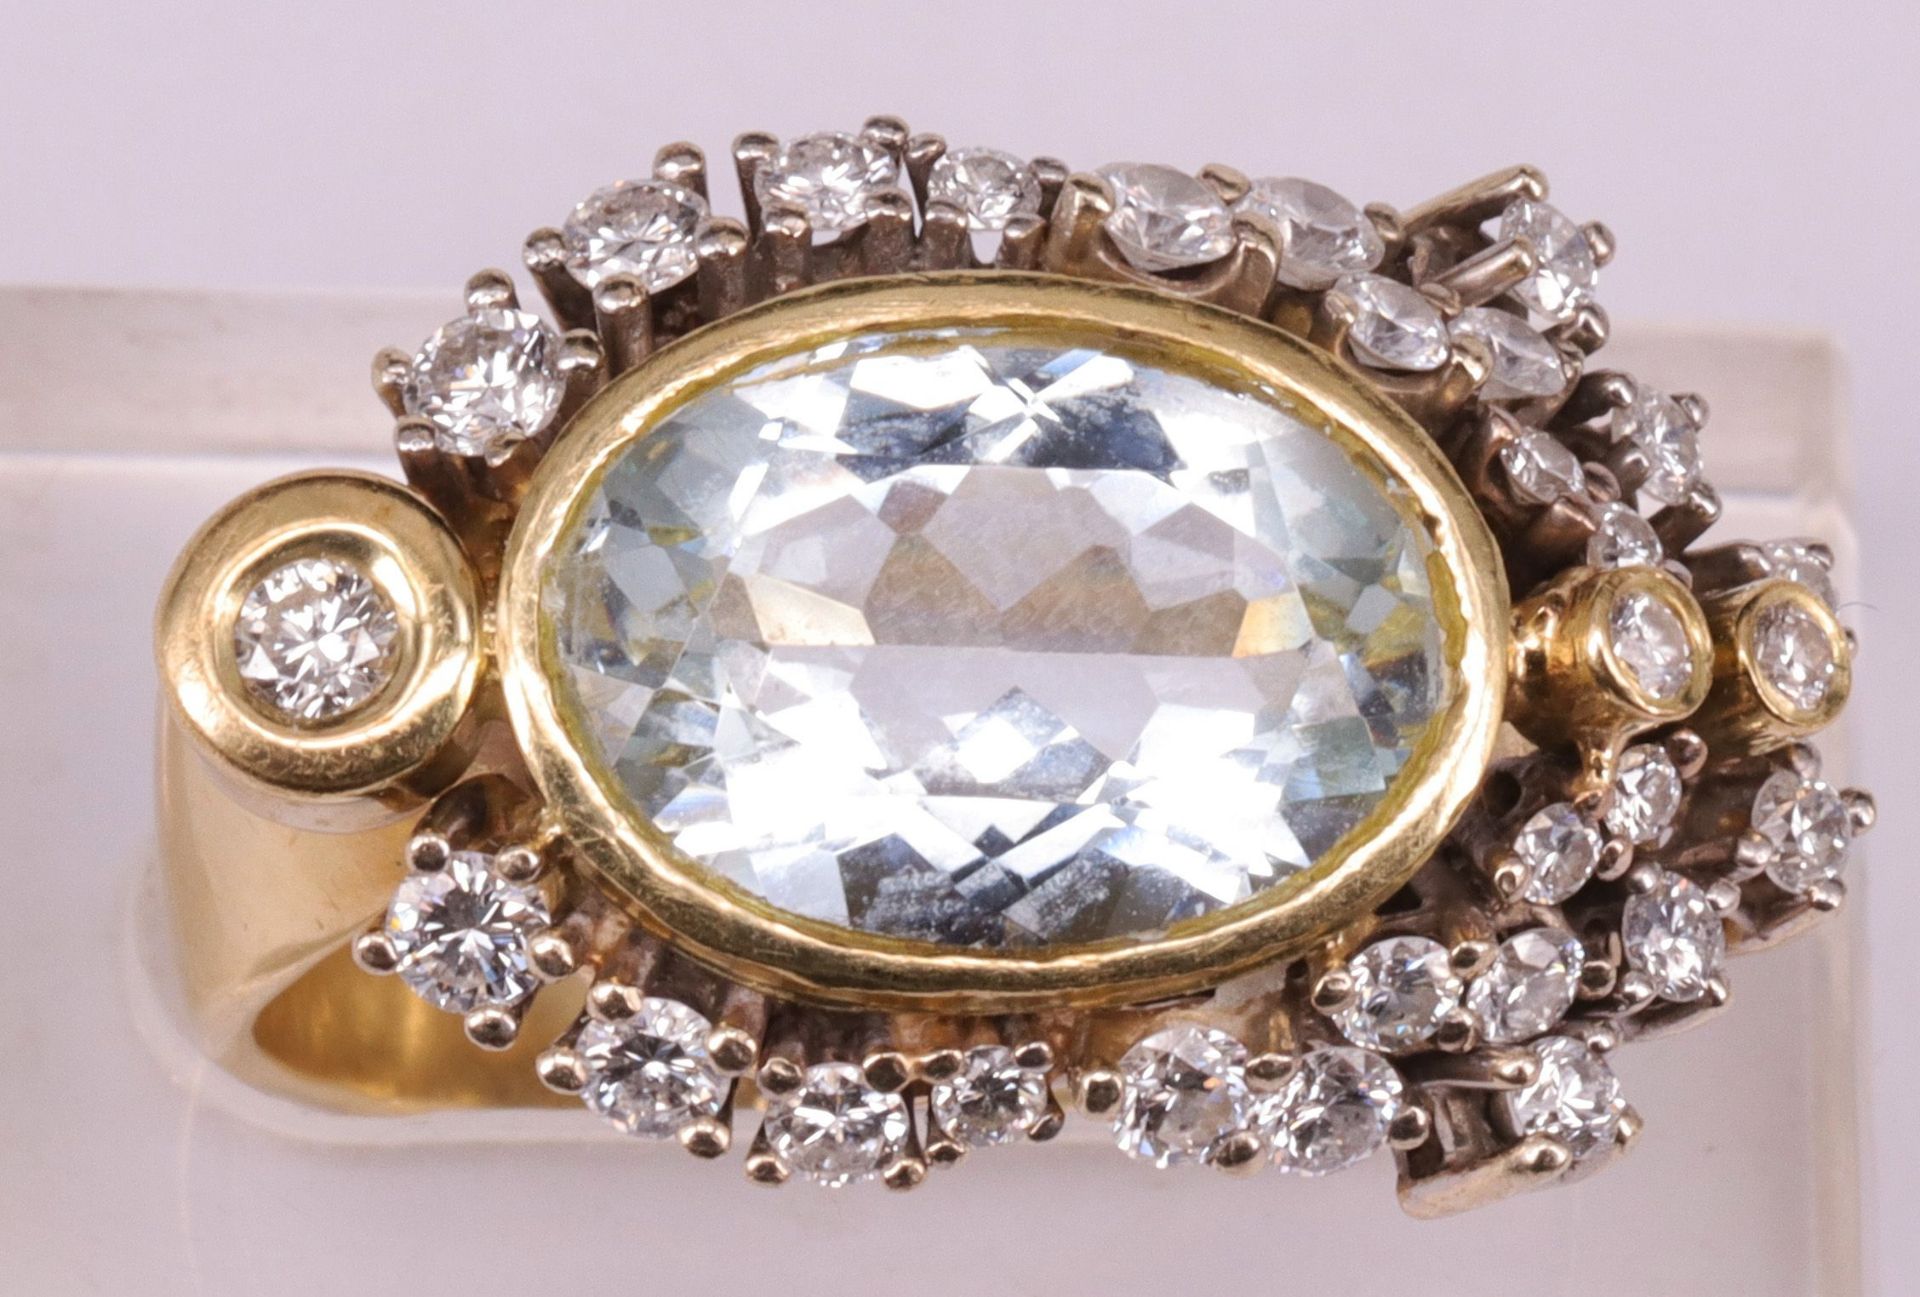 Aparter Ring, 585er GG, 9,79 g, mit Aquamarin und 29 Diamanten in asymetrischer Anordnung, RG57 - Image 4 of 4